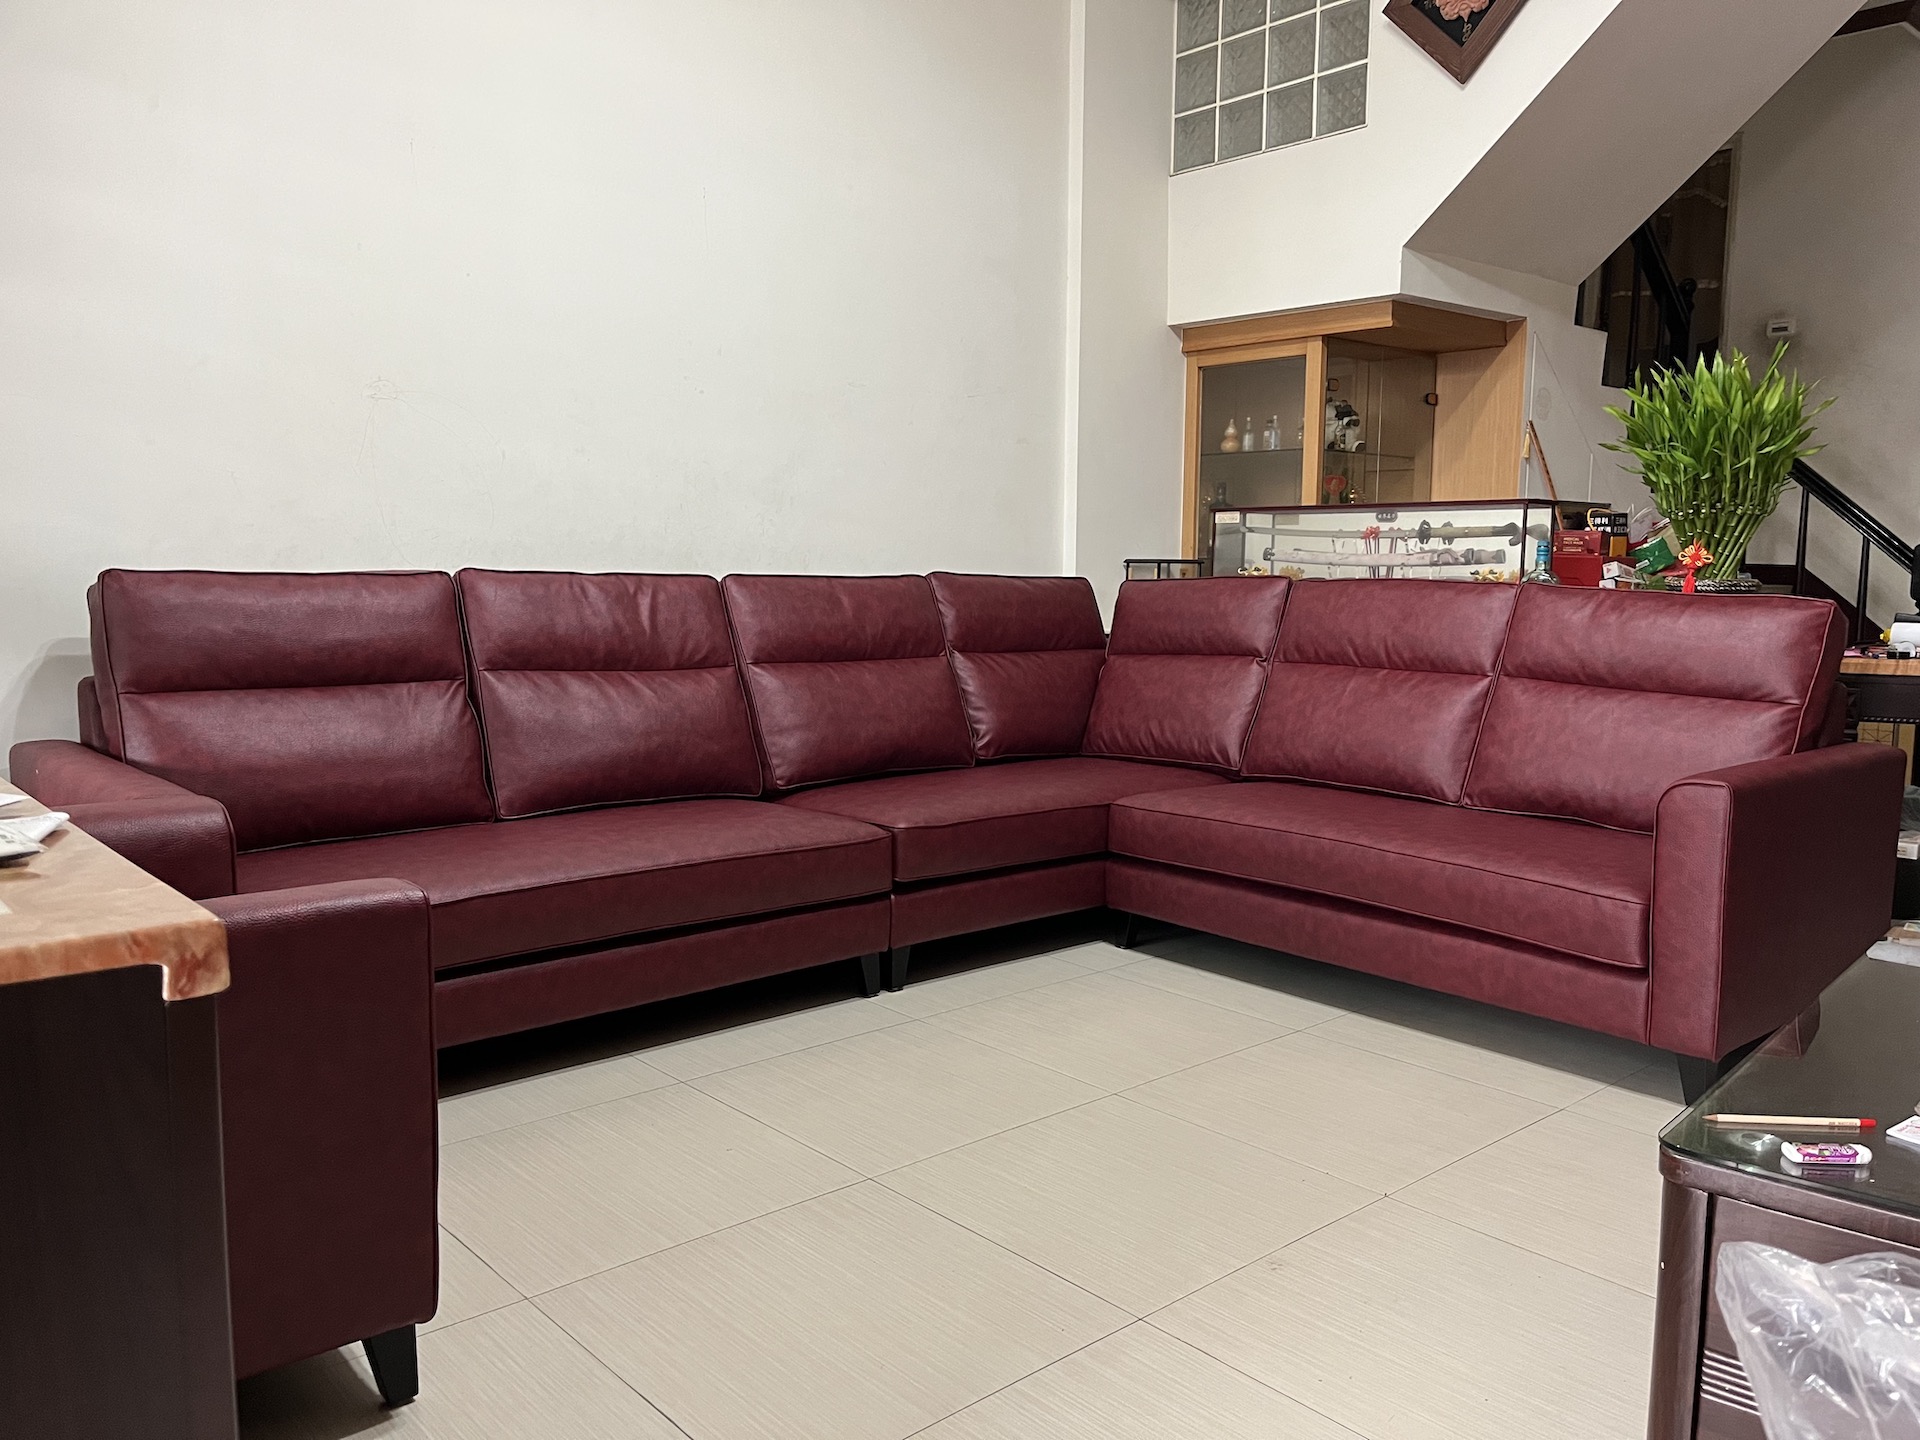 【客戶案例分享】台中太平Ｌ型沙發訂製分享